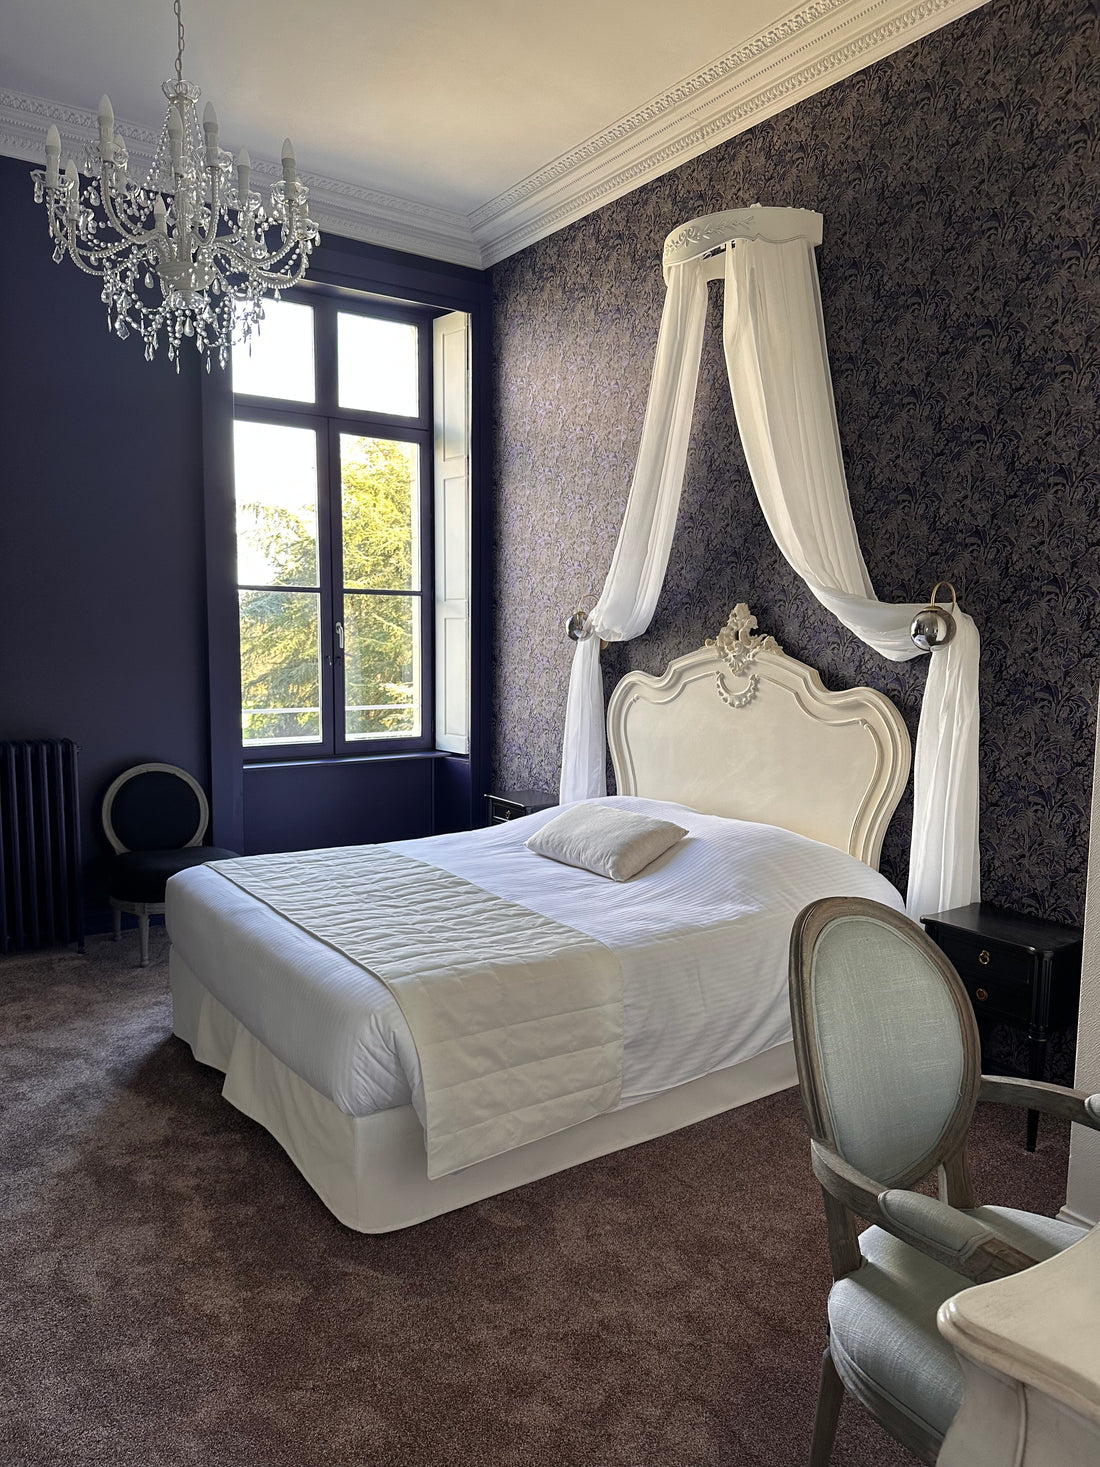 Room 10 at the Château: Tessier de la Motte